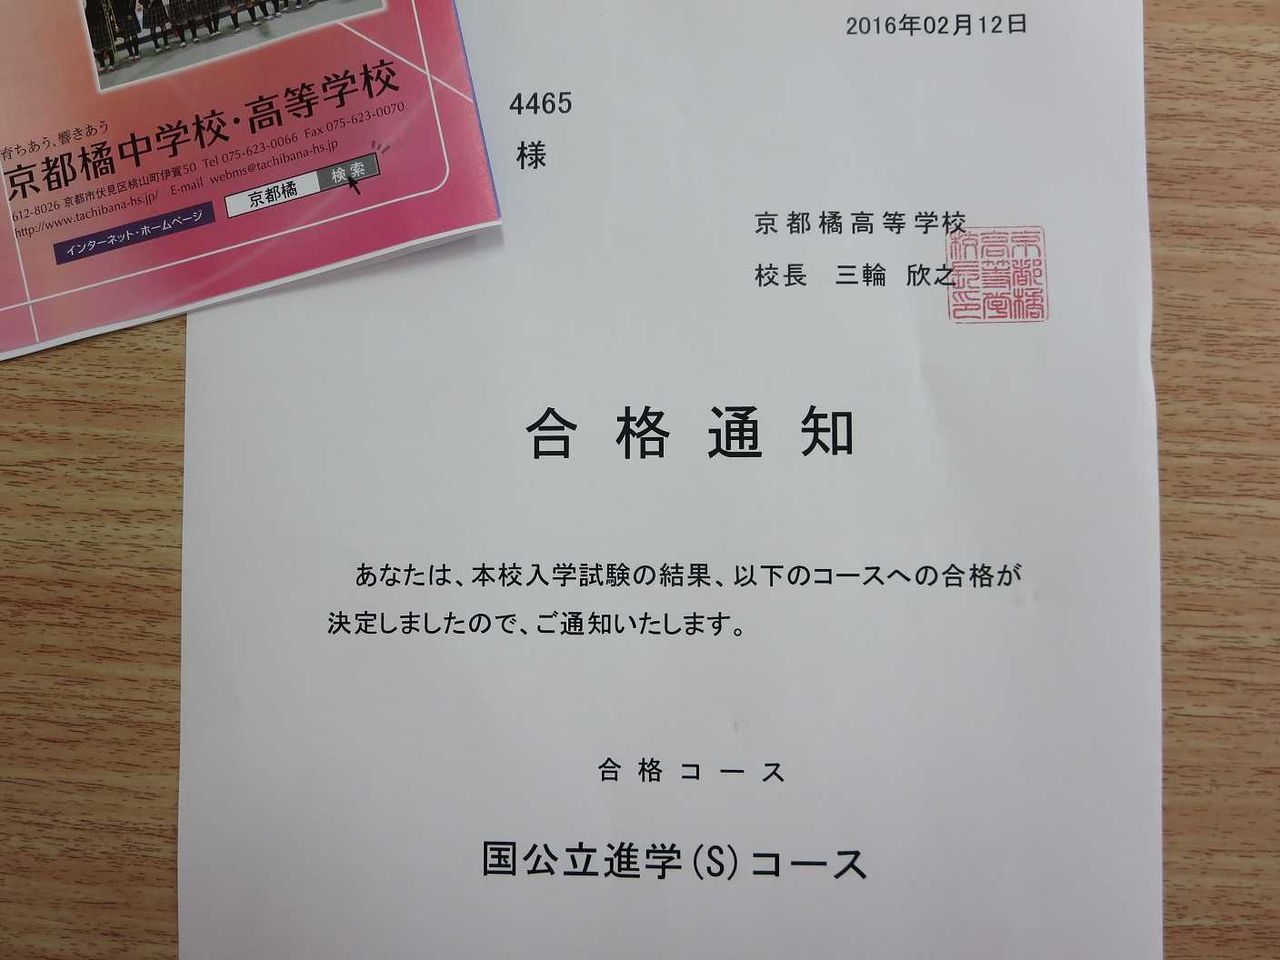 発表 京都 産業 大学 合格 地元愛媛なのですが京都産業大学に合格しました。